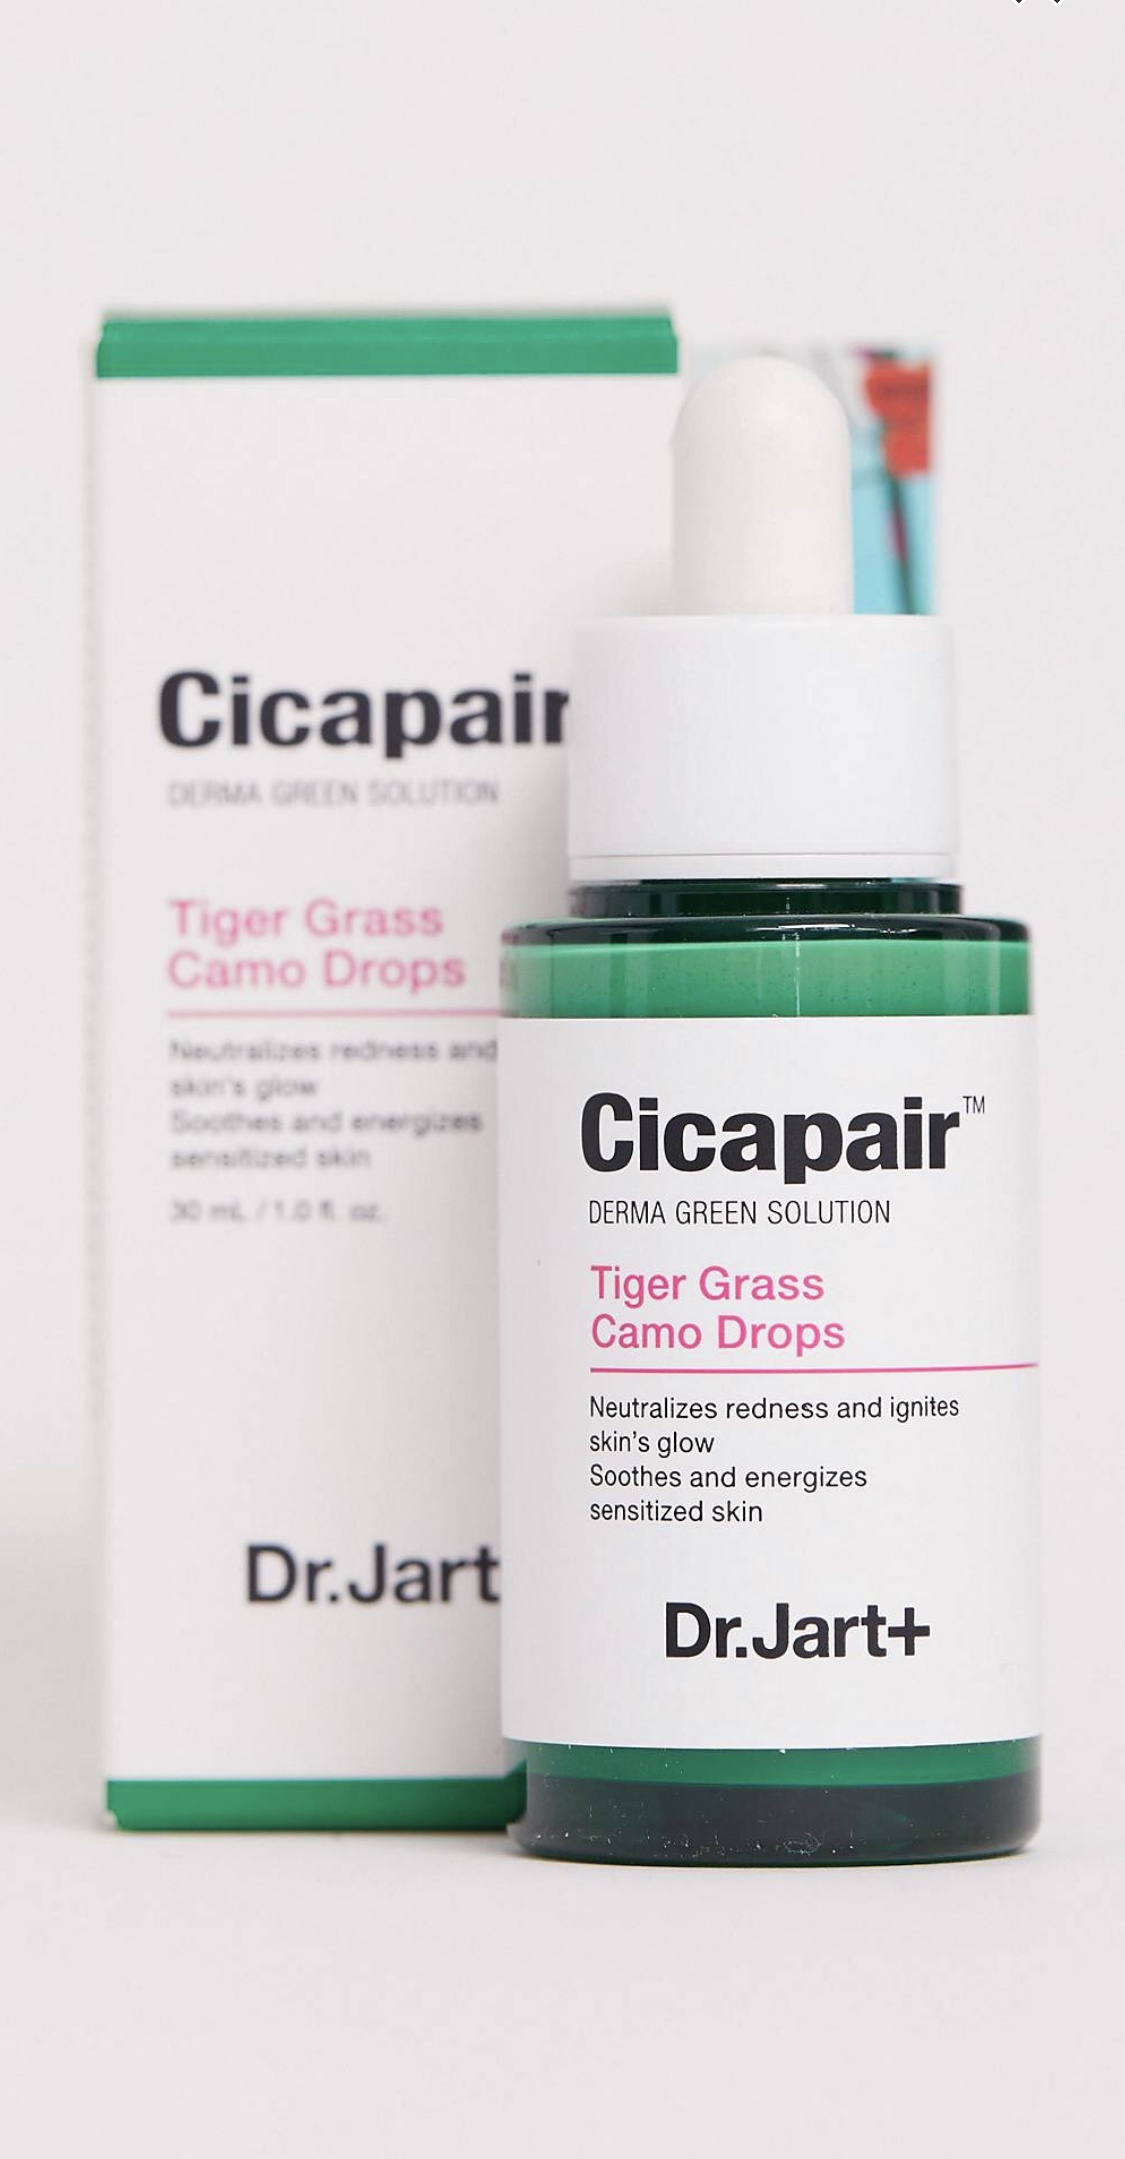 Dr. Jart+ Cicapair Tiger Grass Camo Drops